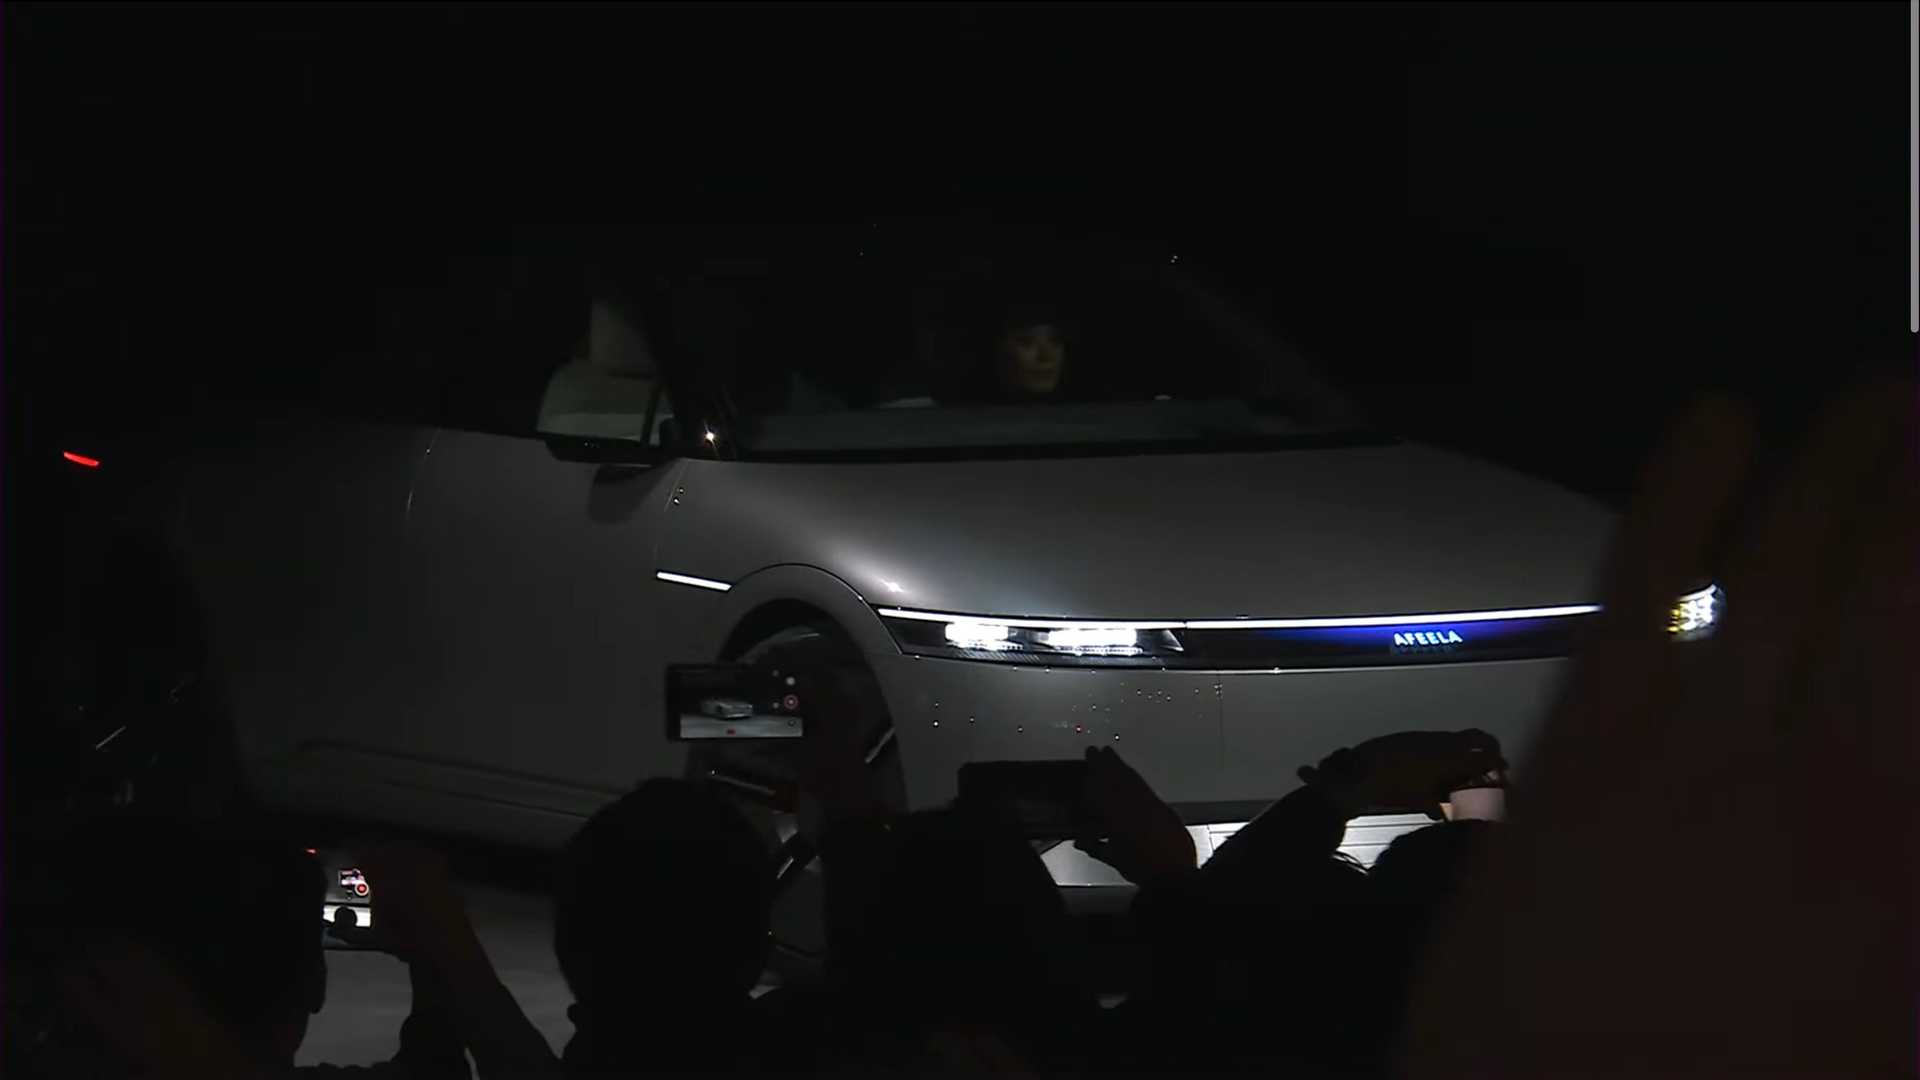 سوني تطلق علامتها التجارية الجديدة للسيارات رسمياً بالتعاون مع هوندا 9